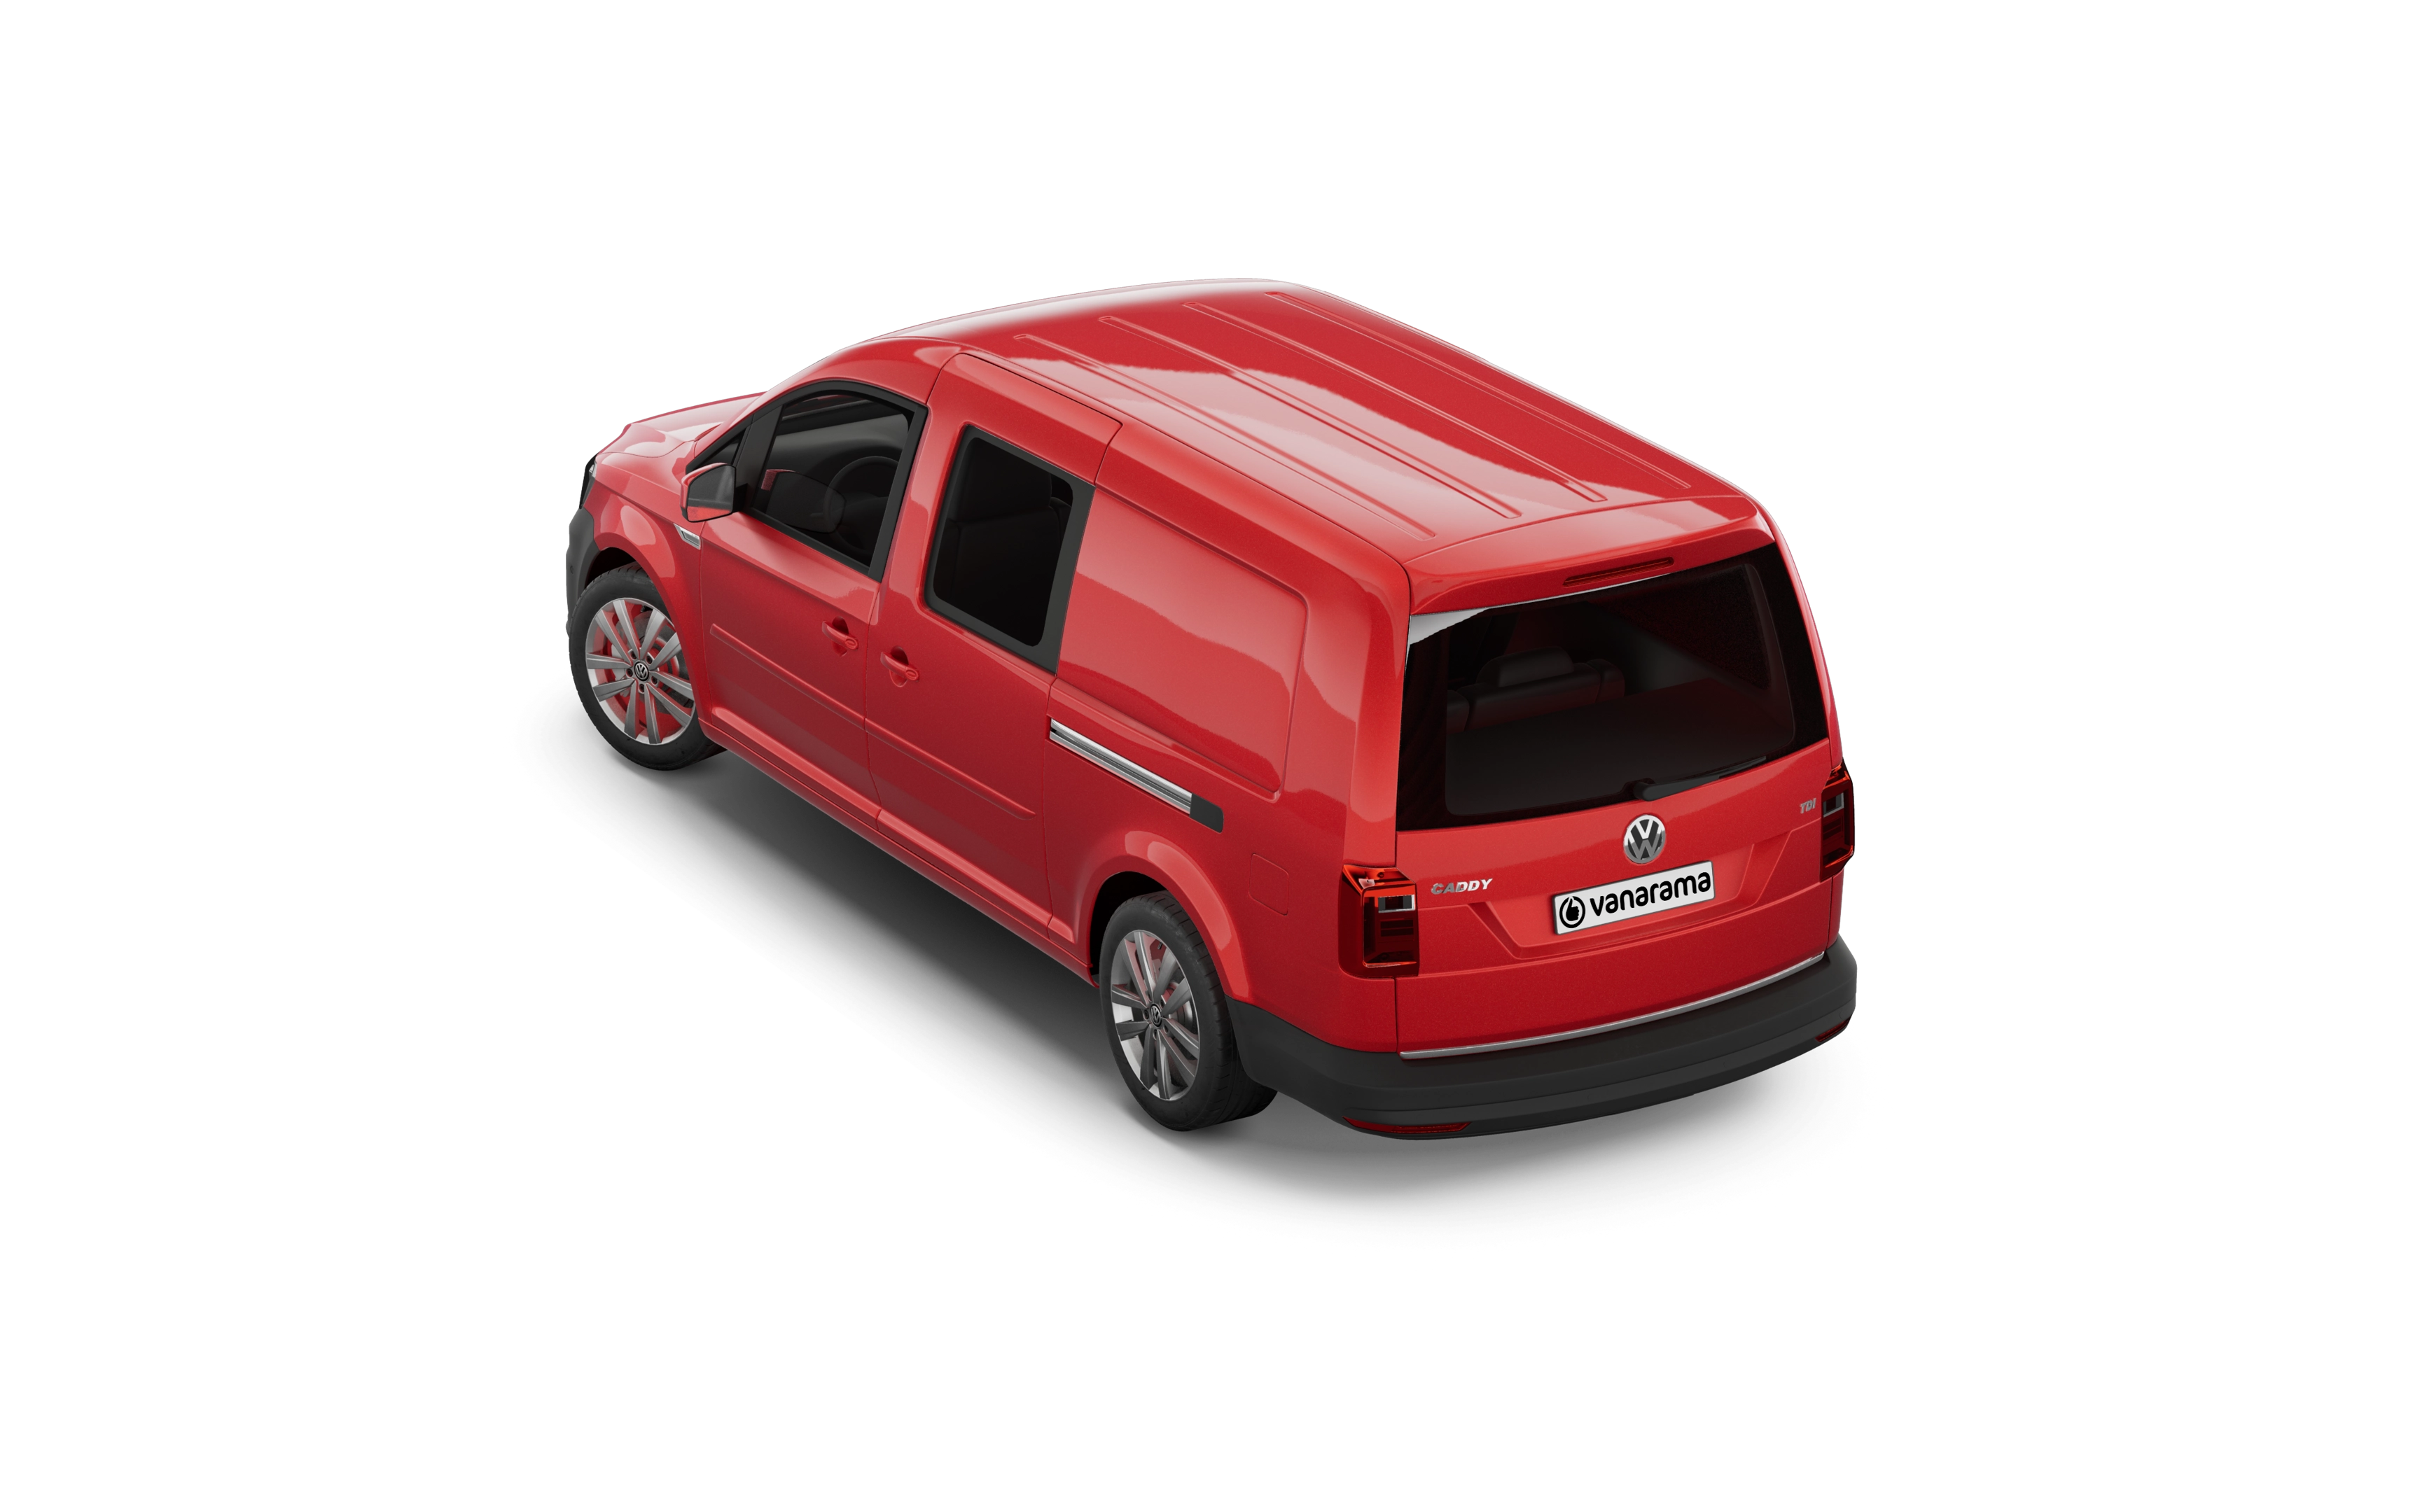 Volkswagen caddy maxi estate 2.0 tdi 122 5 doors dsg [5 seat]